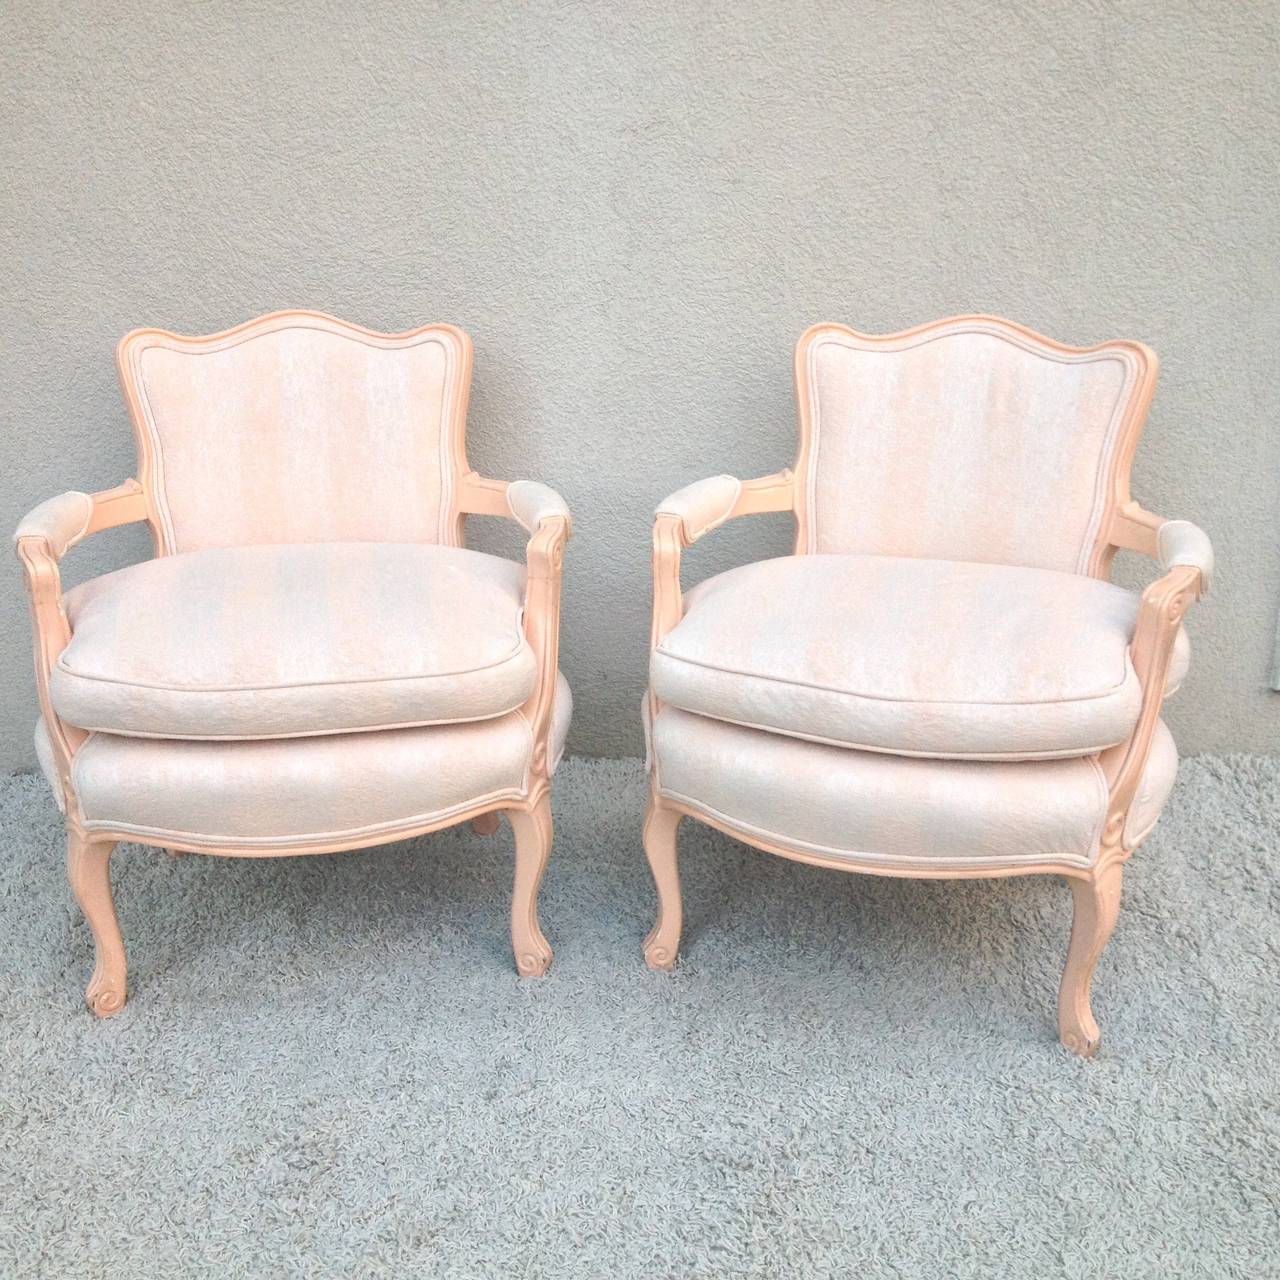 Pair petite Fauteuil Lois XV Stühle Lachsrosa lackiert Finish mit off weiß und zart rosa gewebten Stoff original in sehr gutem Zustand.